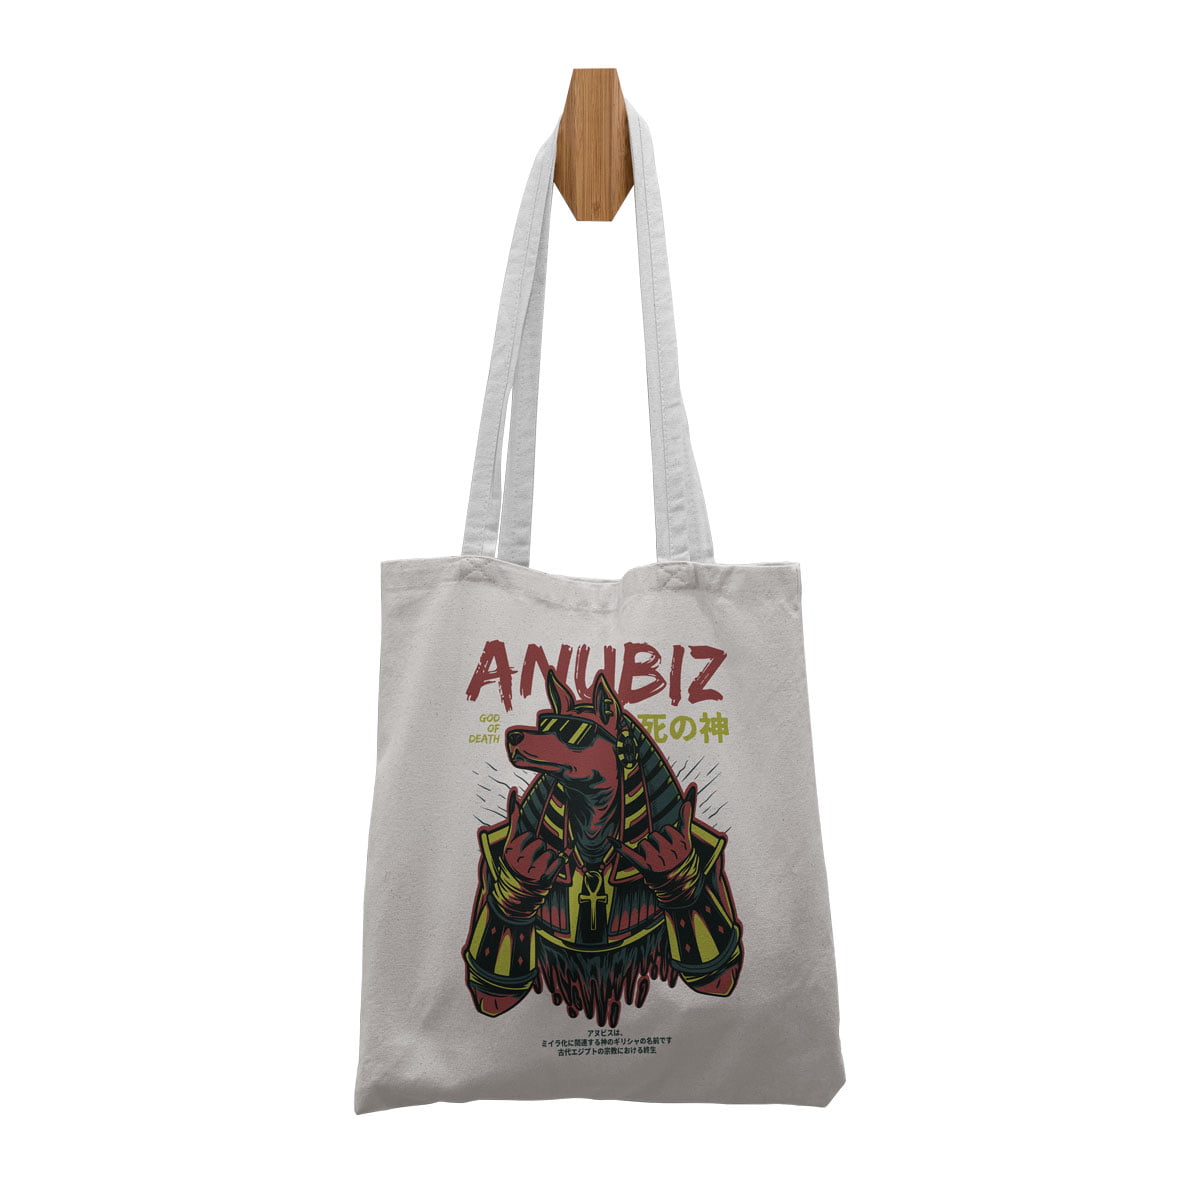 Anubis bez canta - anubis (anubiz) özel baskı çanta - figurex